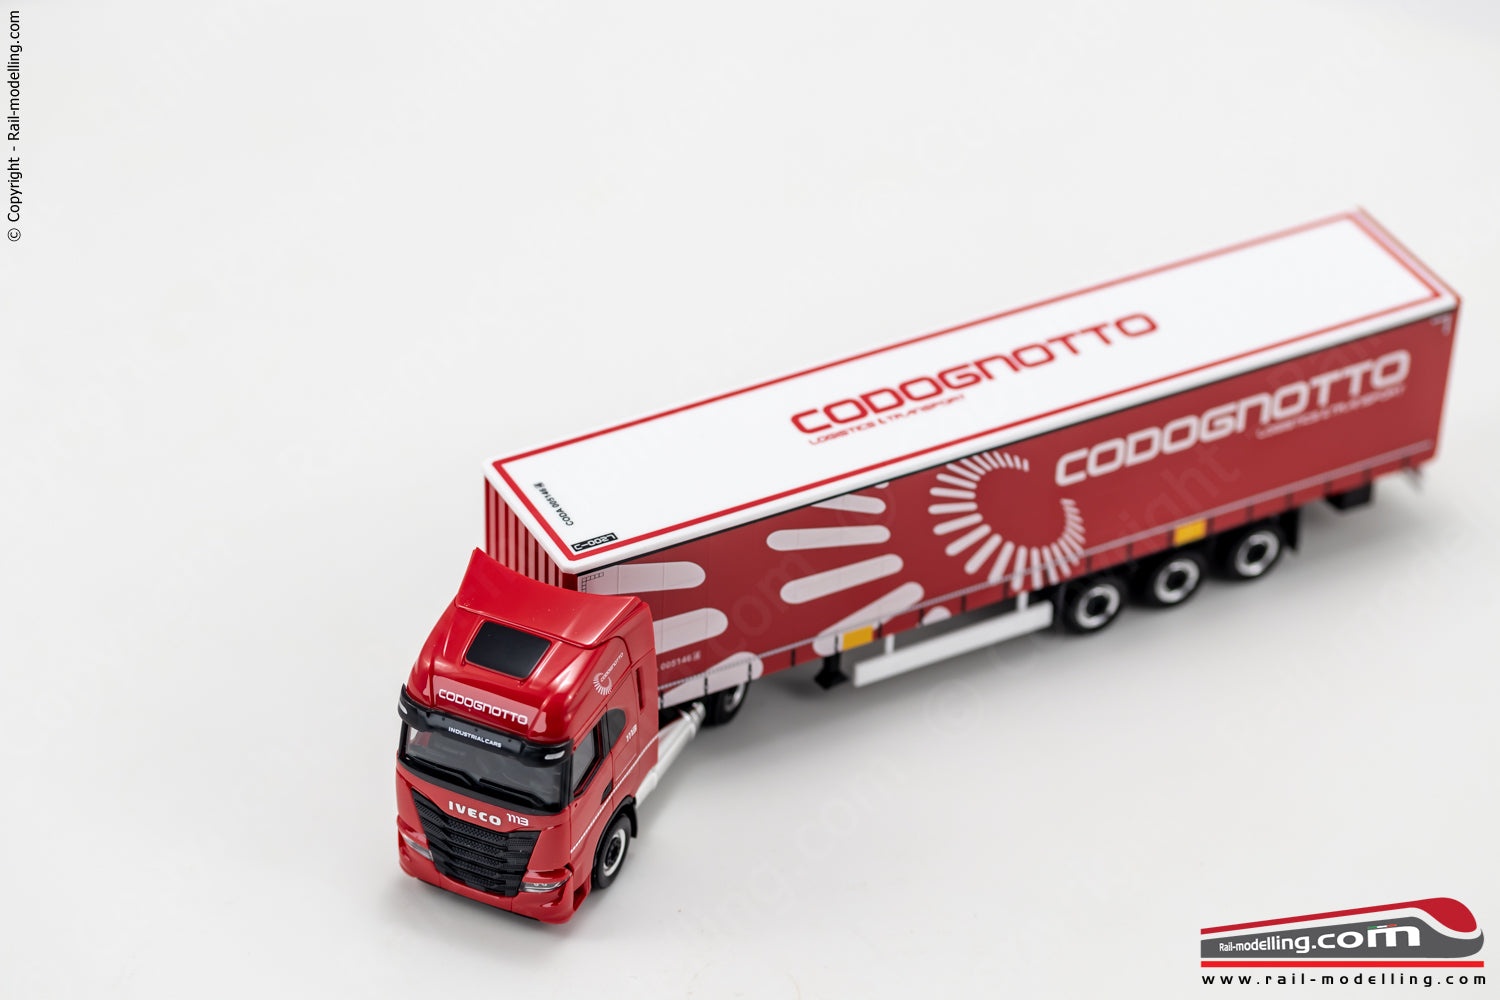 HERPA 950251- H0 1:87 - Camion Iveco S-Way + semirimorchio Codognotto livrea 2022